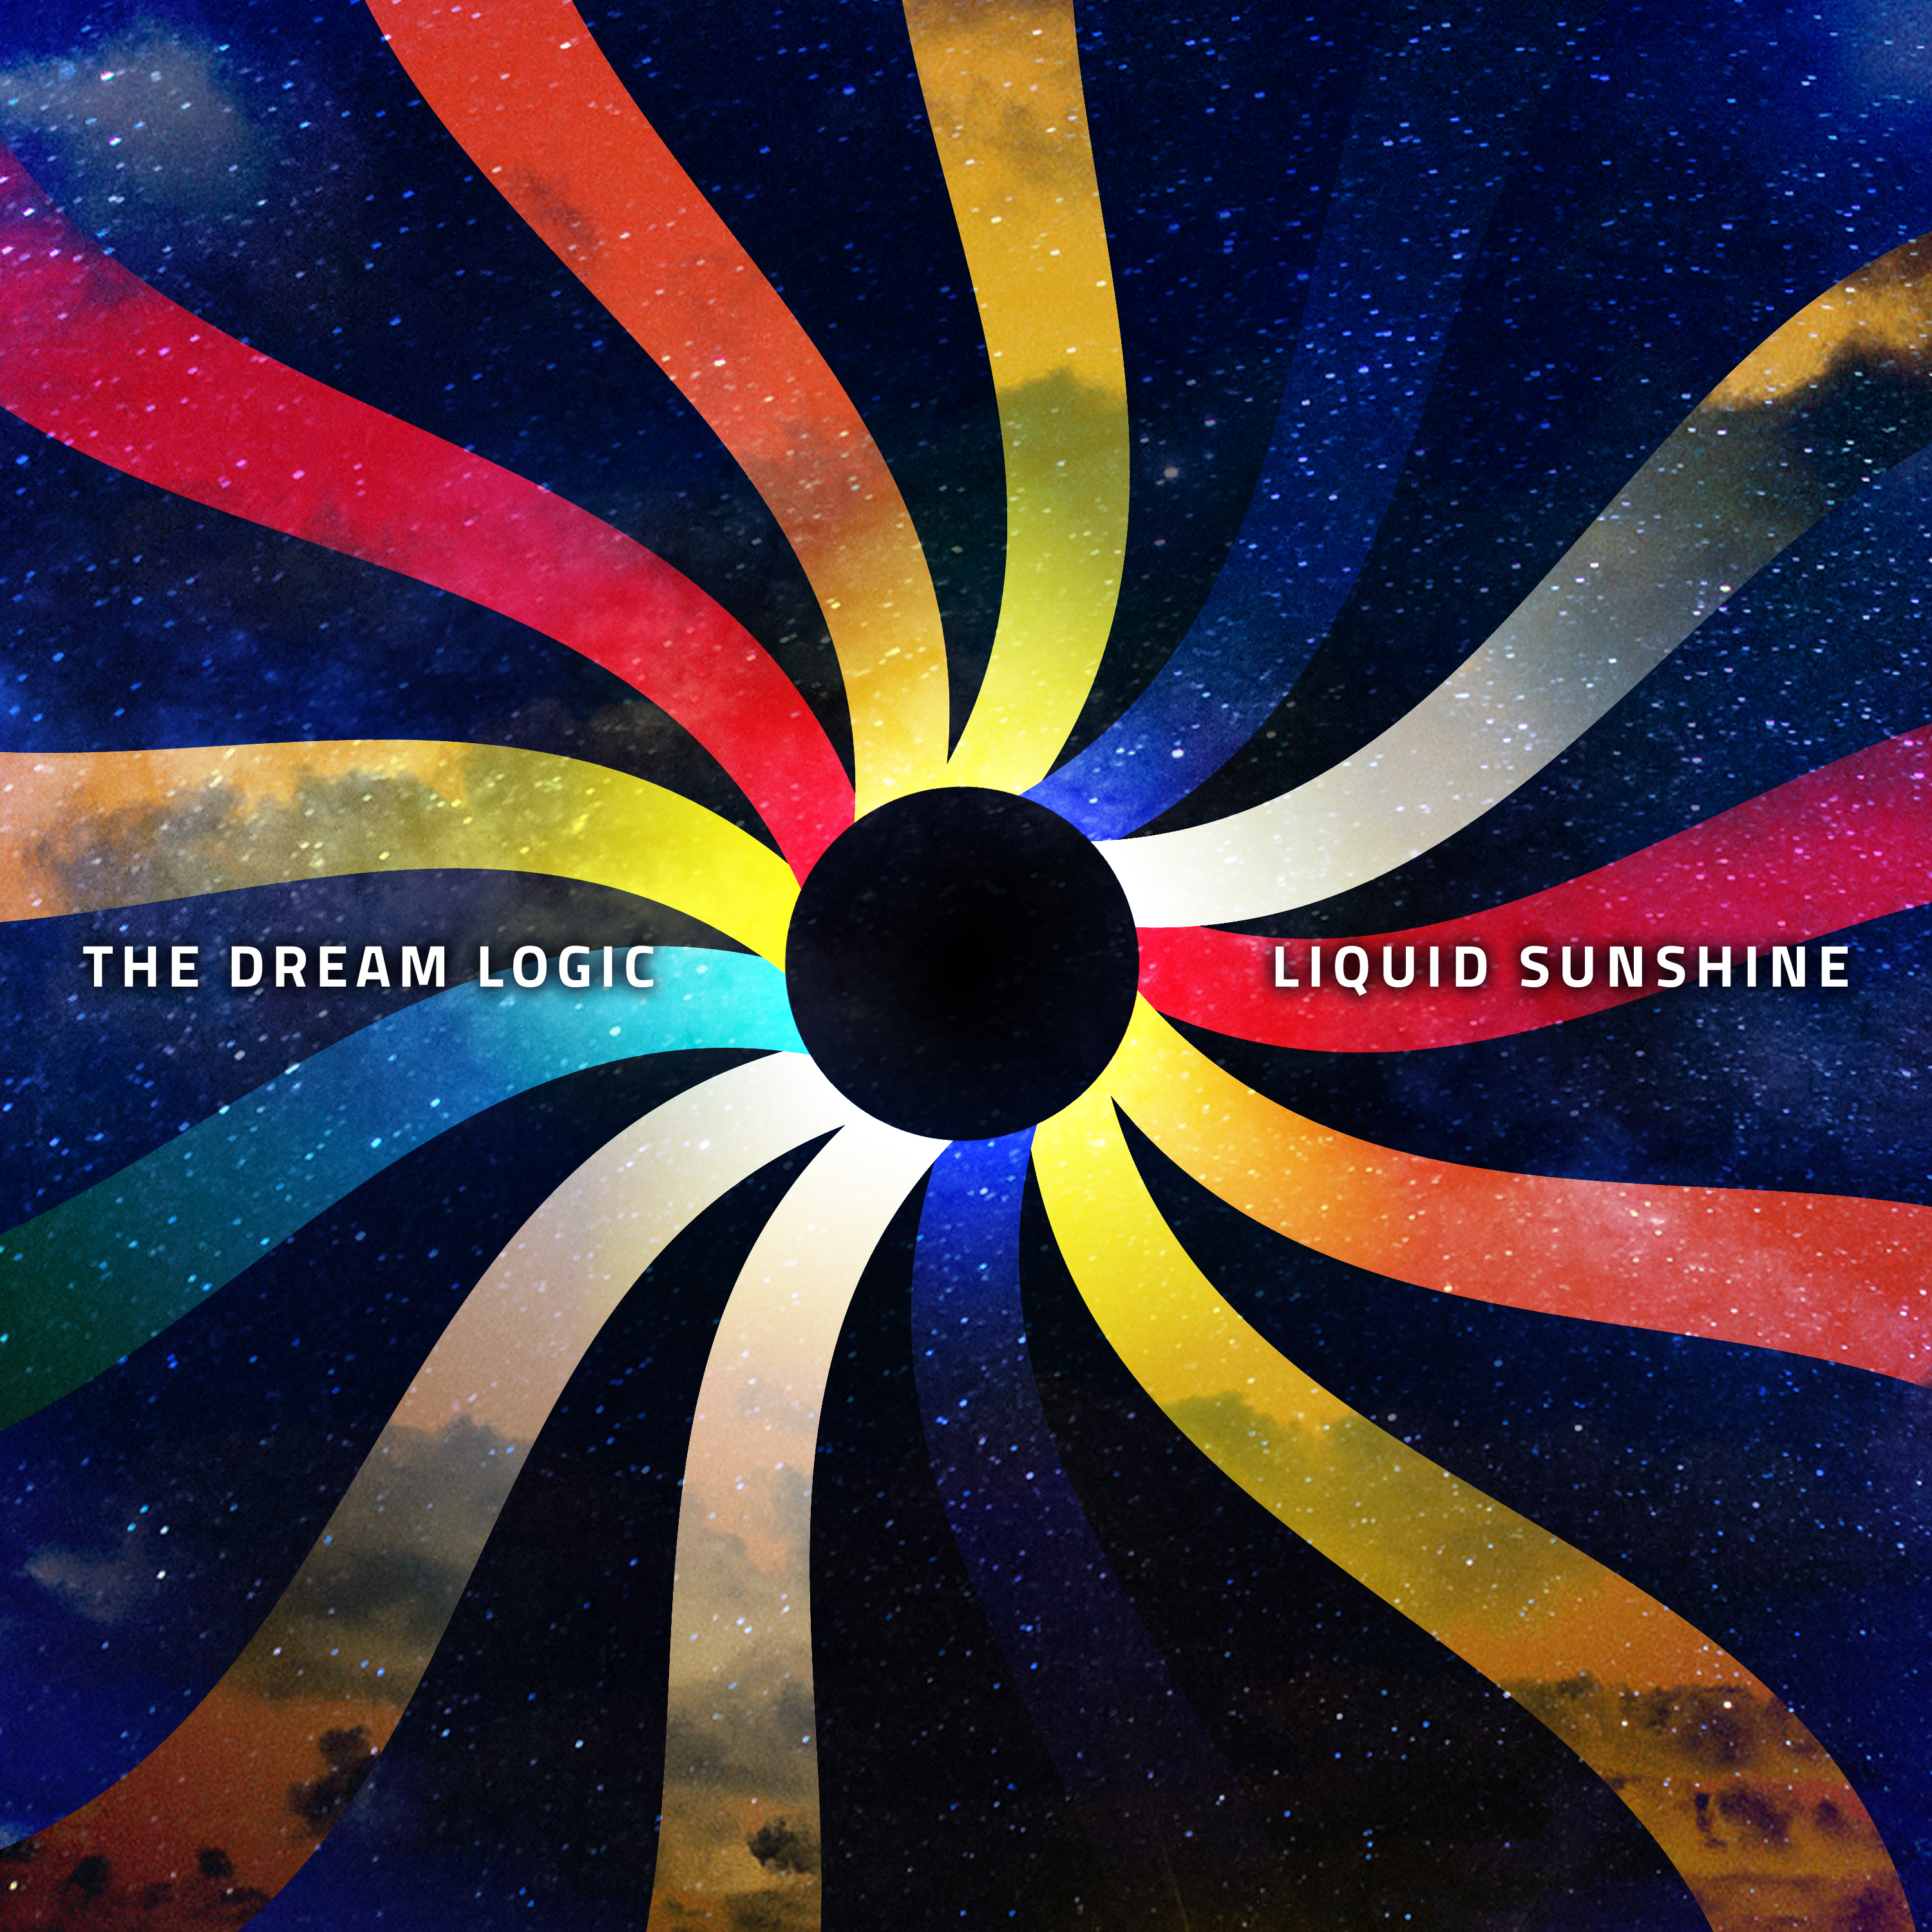 THE DREAM LOGIC RETURN WITH THIRD STUDIO ALBUM